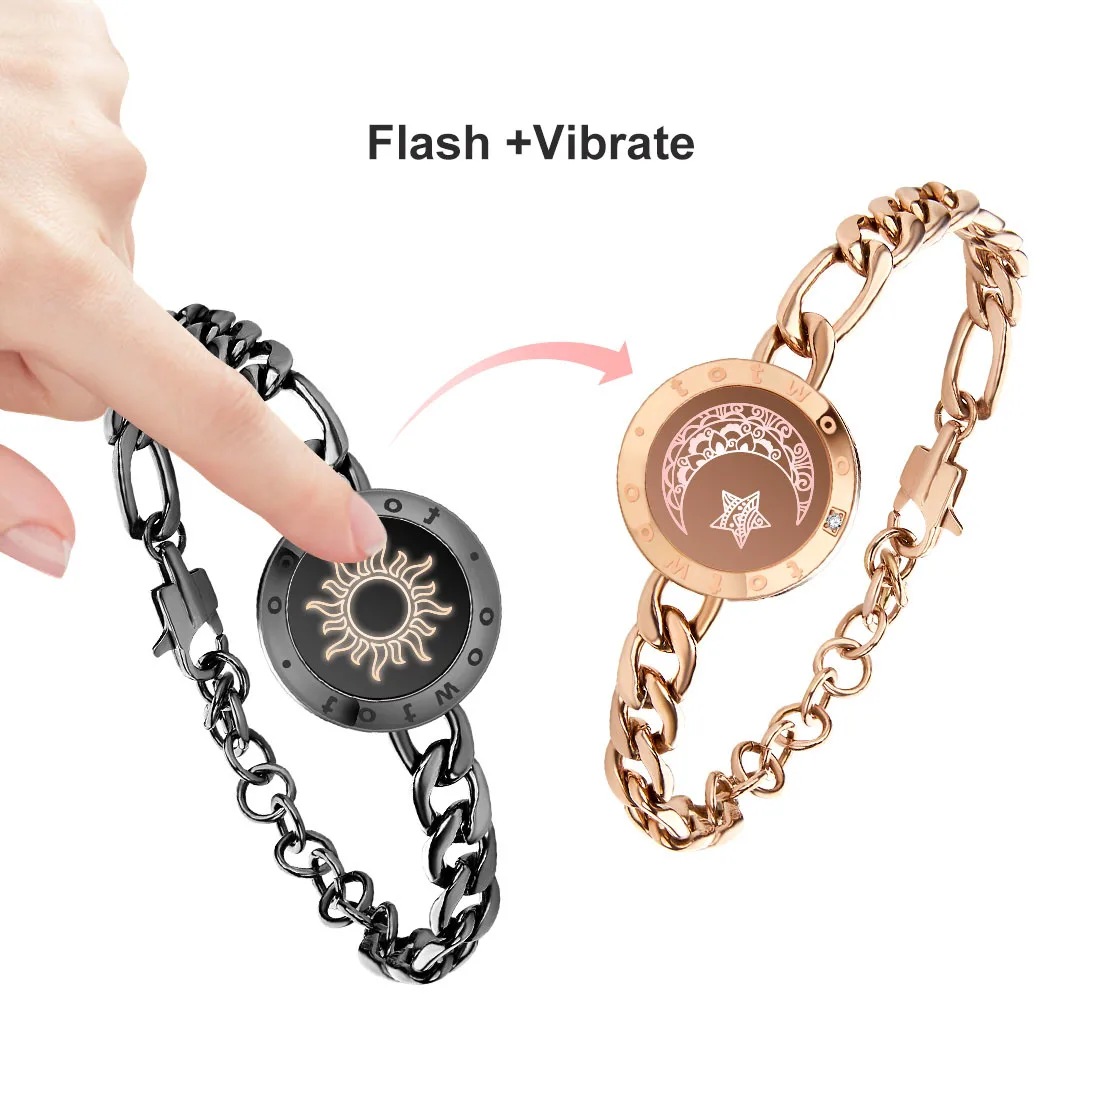 Couple Vibrating Bracelets Cheap Sale, 52% OFF | casalimonerestaurant.com